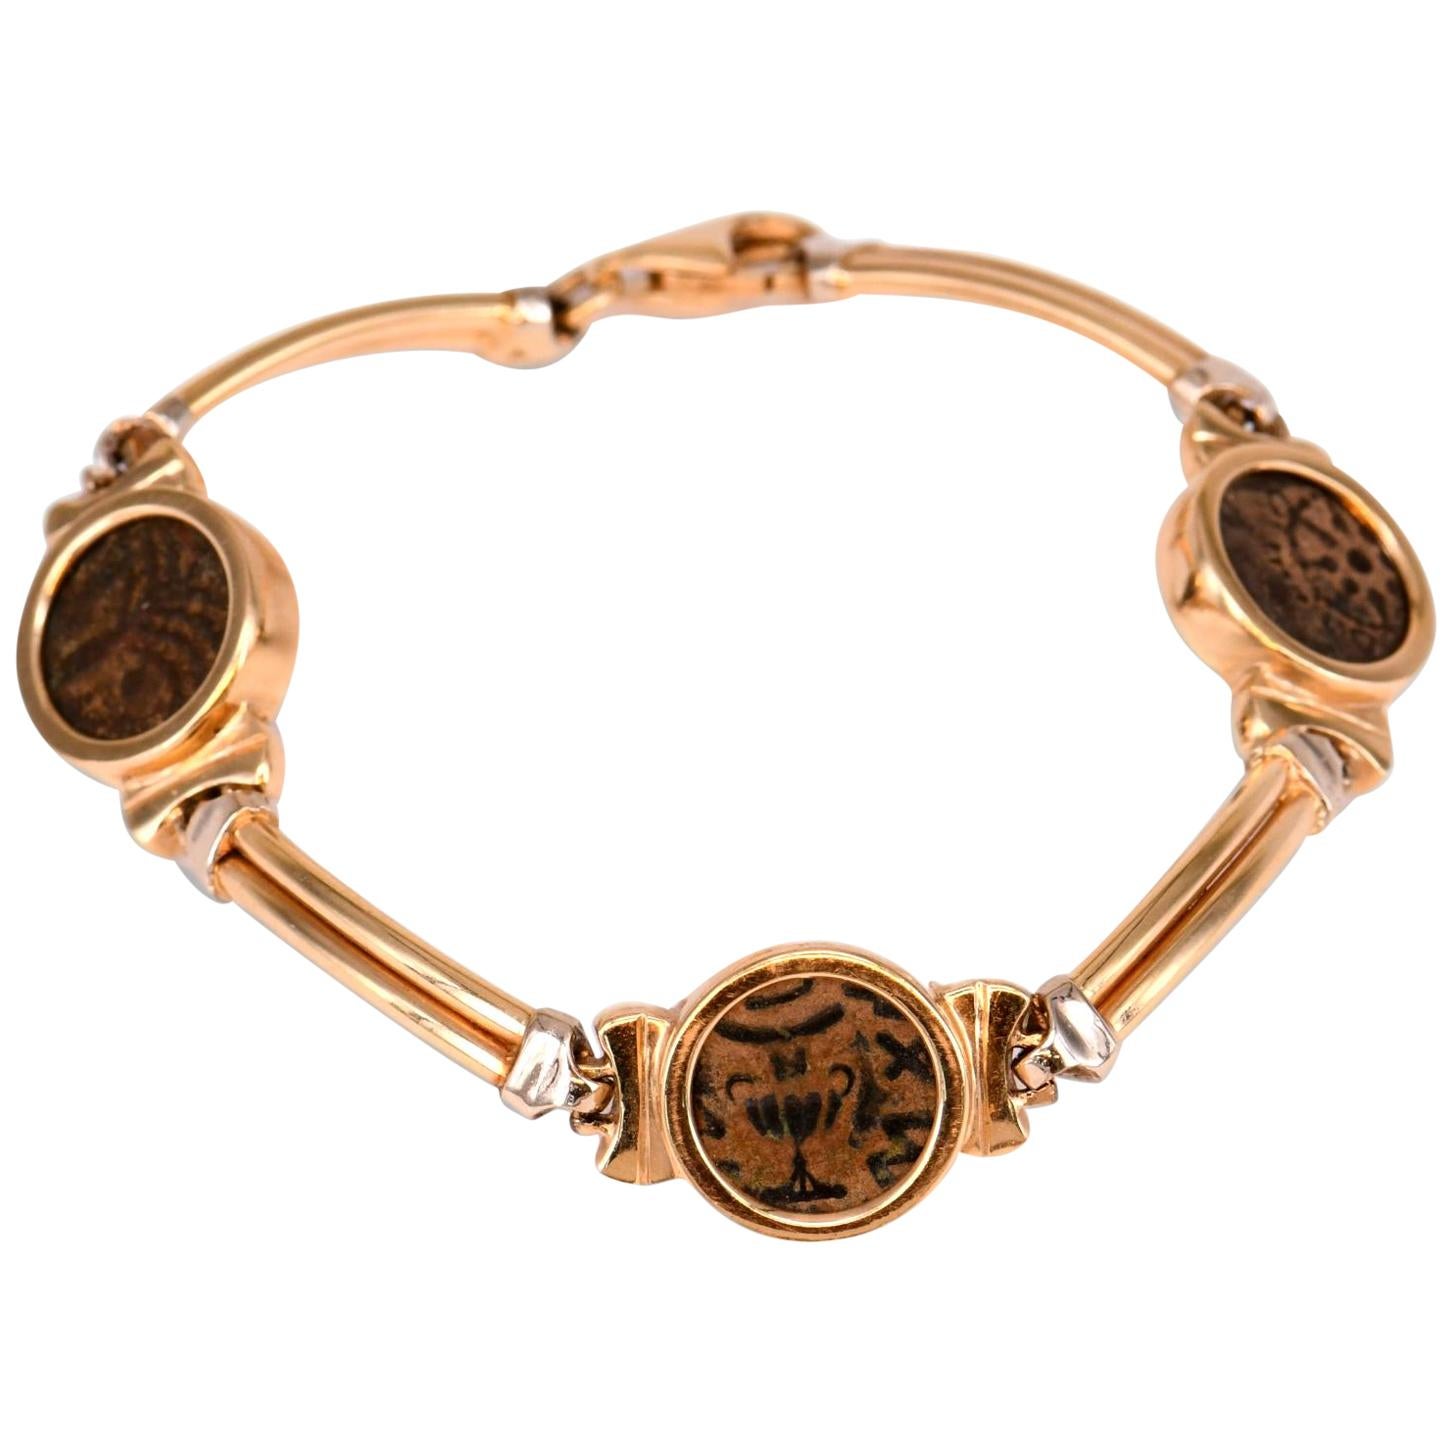 Unique Antique Roman Coin Gold Bracelet